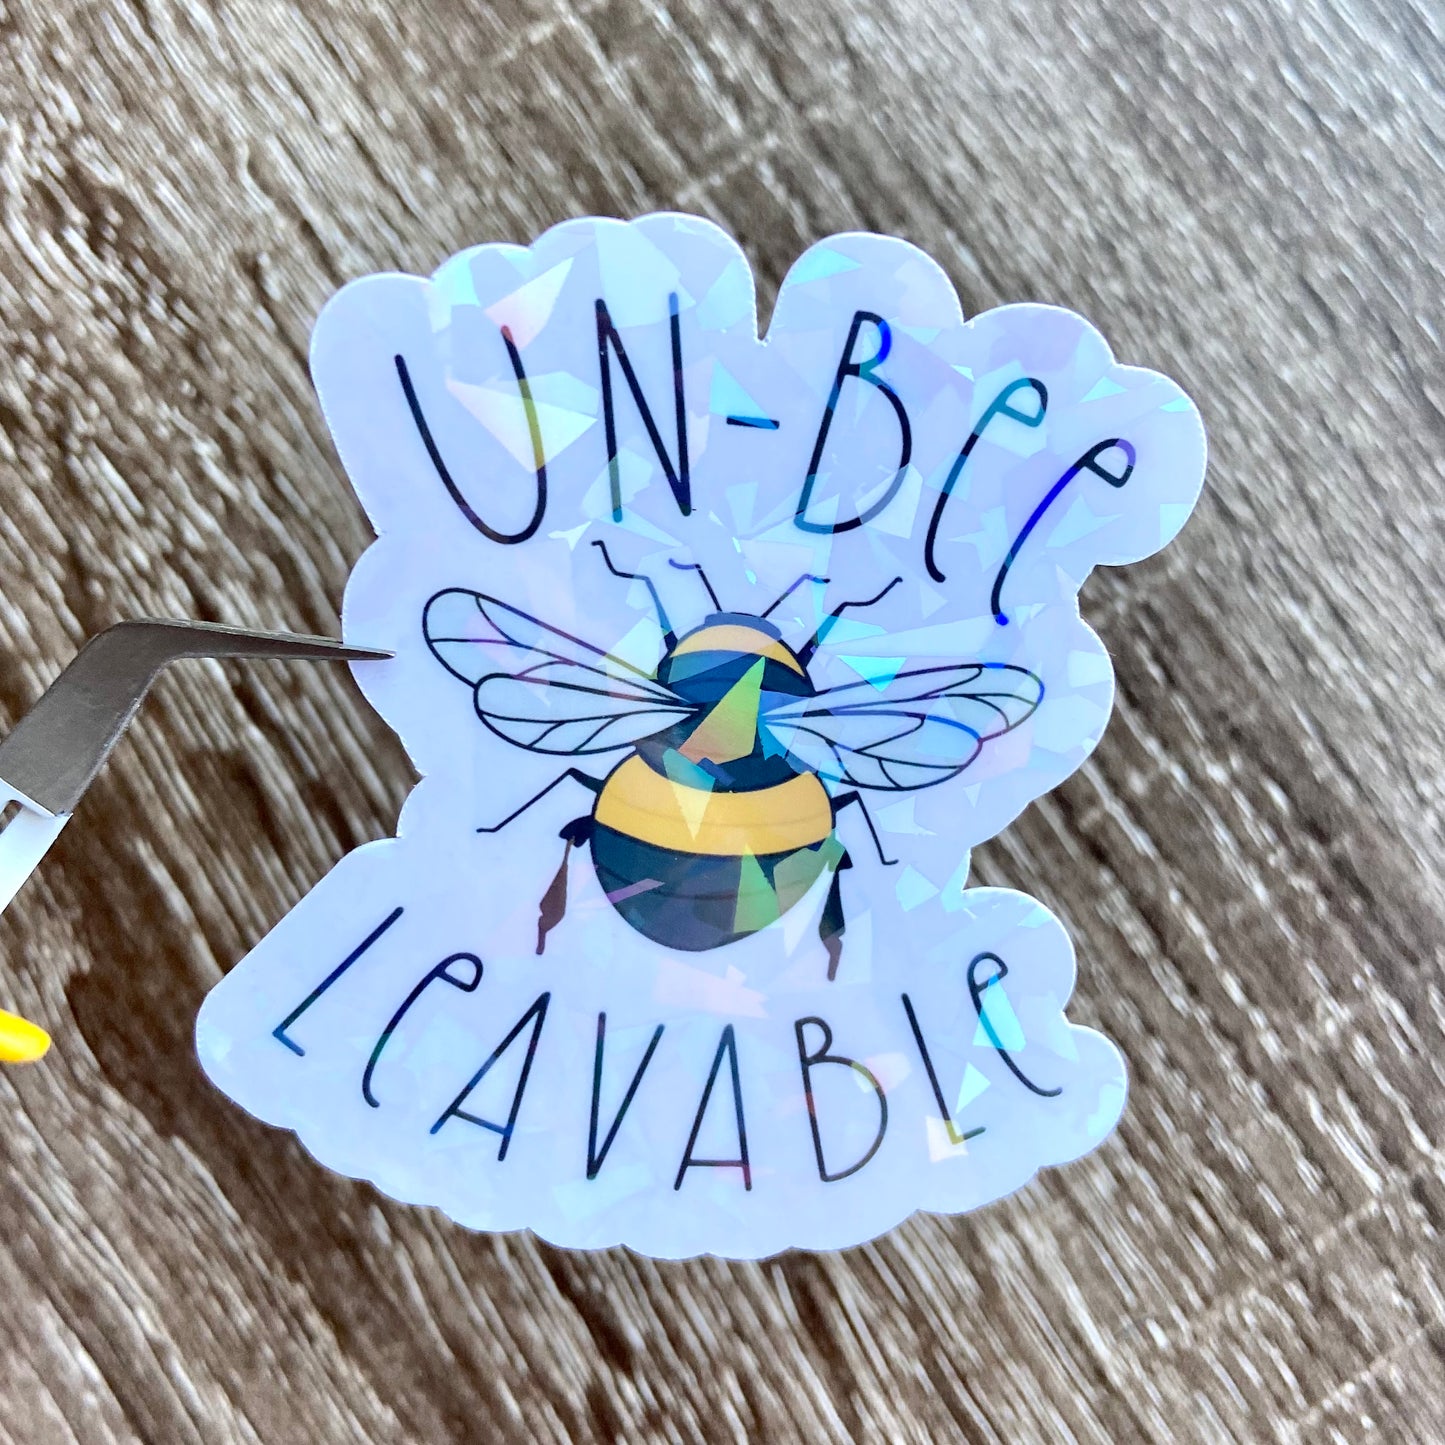 Un-Bee leavable Sticker